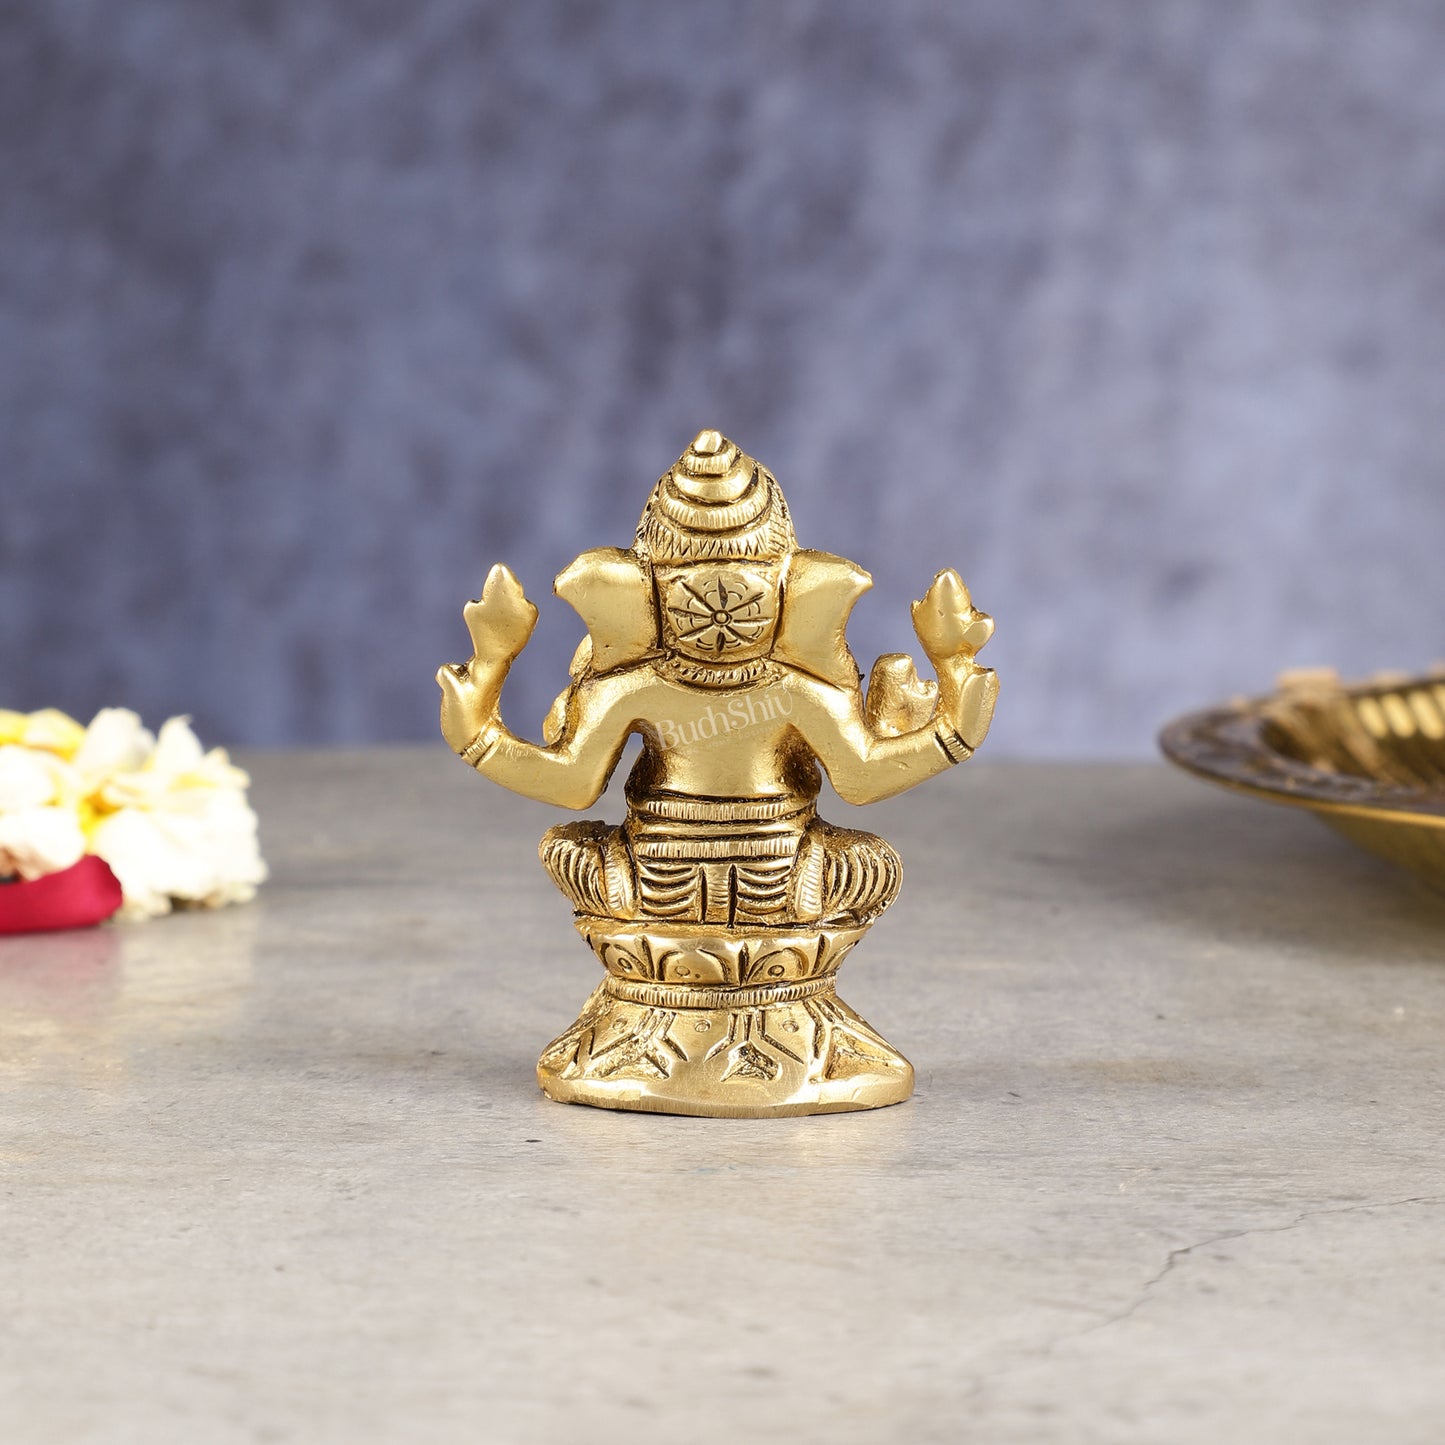 Pure brass small ganesha idol 3 inch